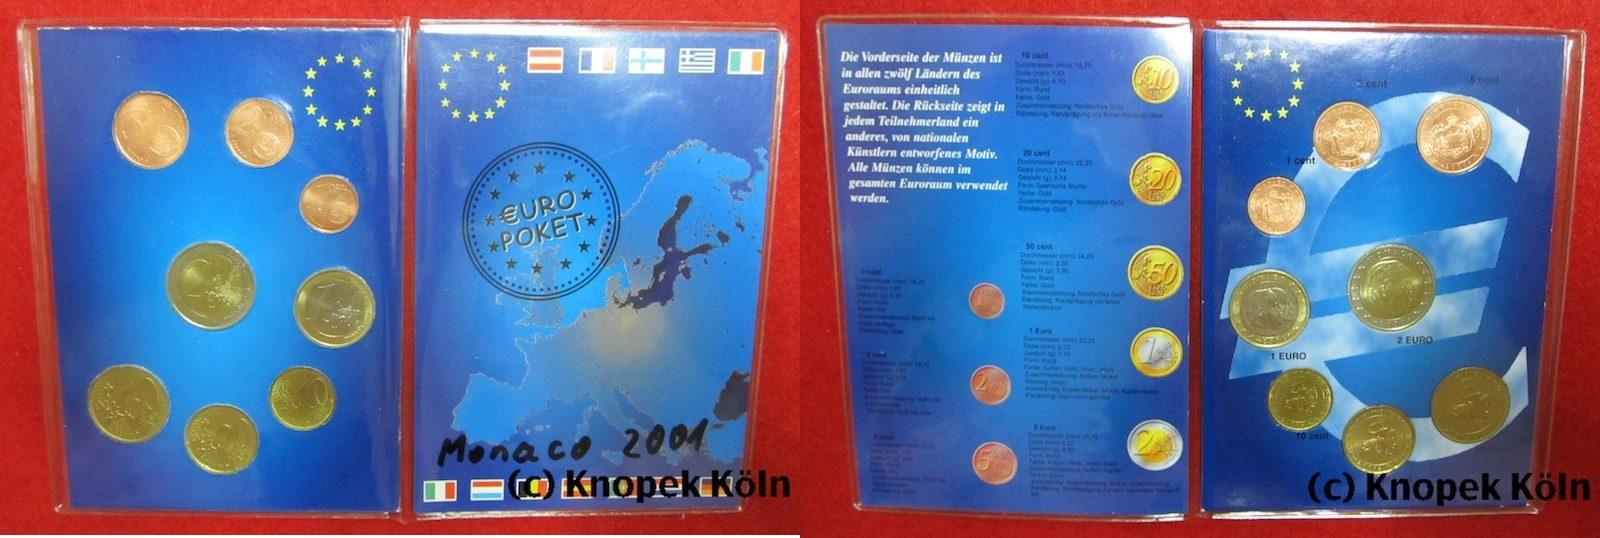 Foto Monaco Euro-Kursmünzensatz Kms 2001 foto 331916